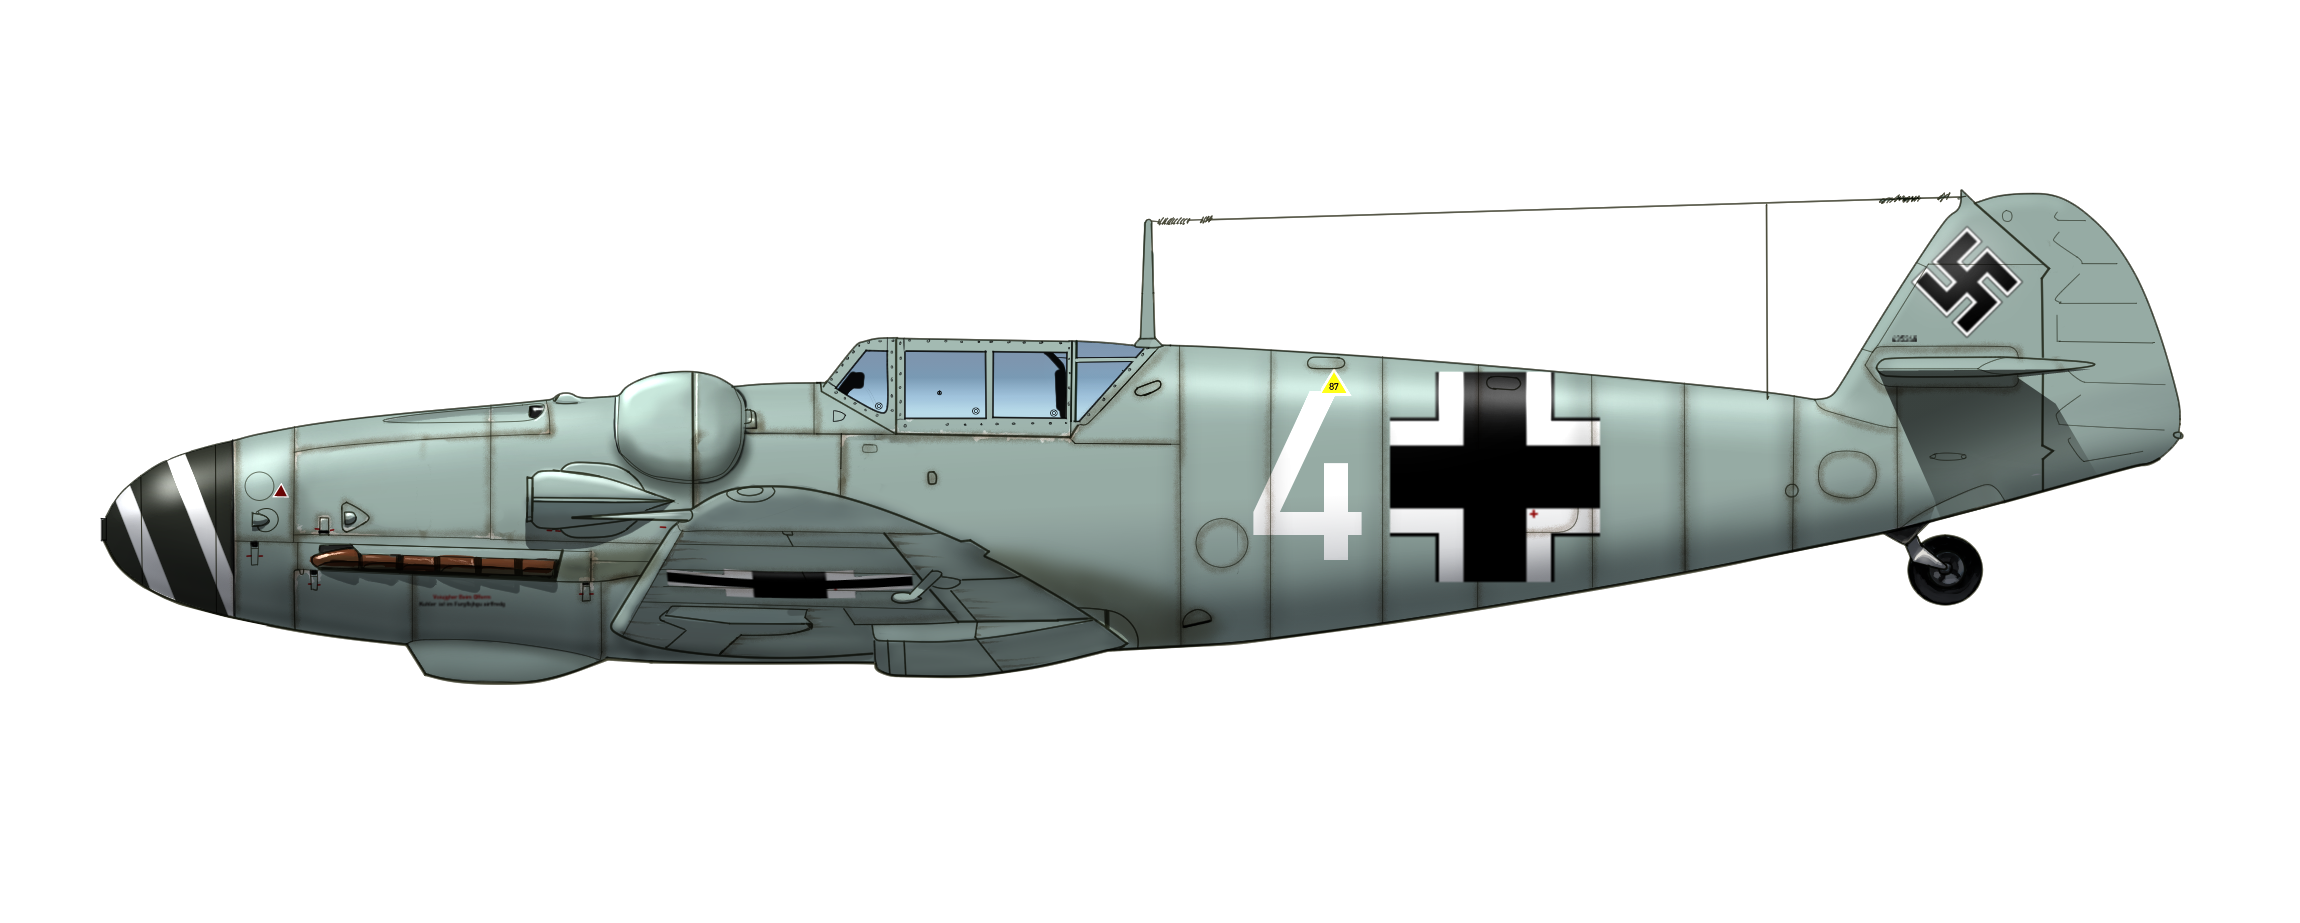 Messerschmitt Bf 109g 1 3 5 Pressurized High Altitude Series Plane